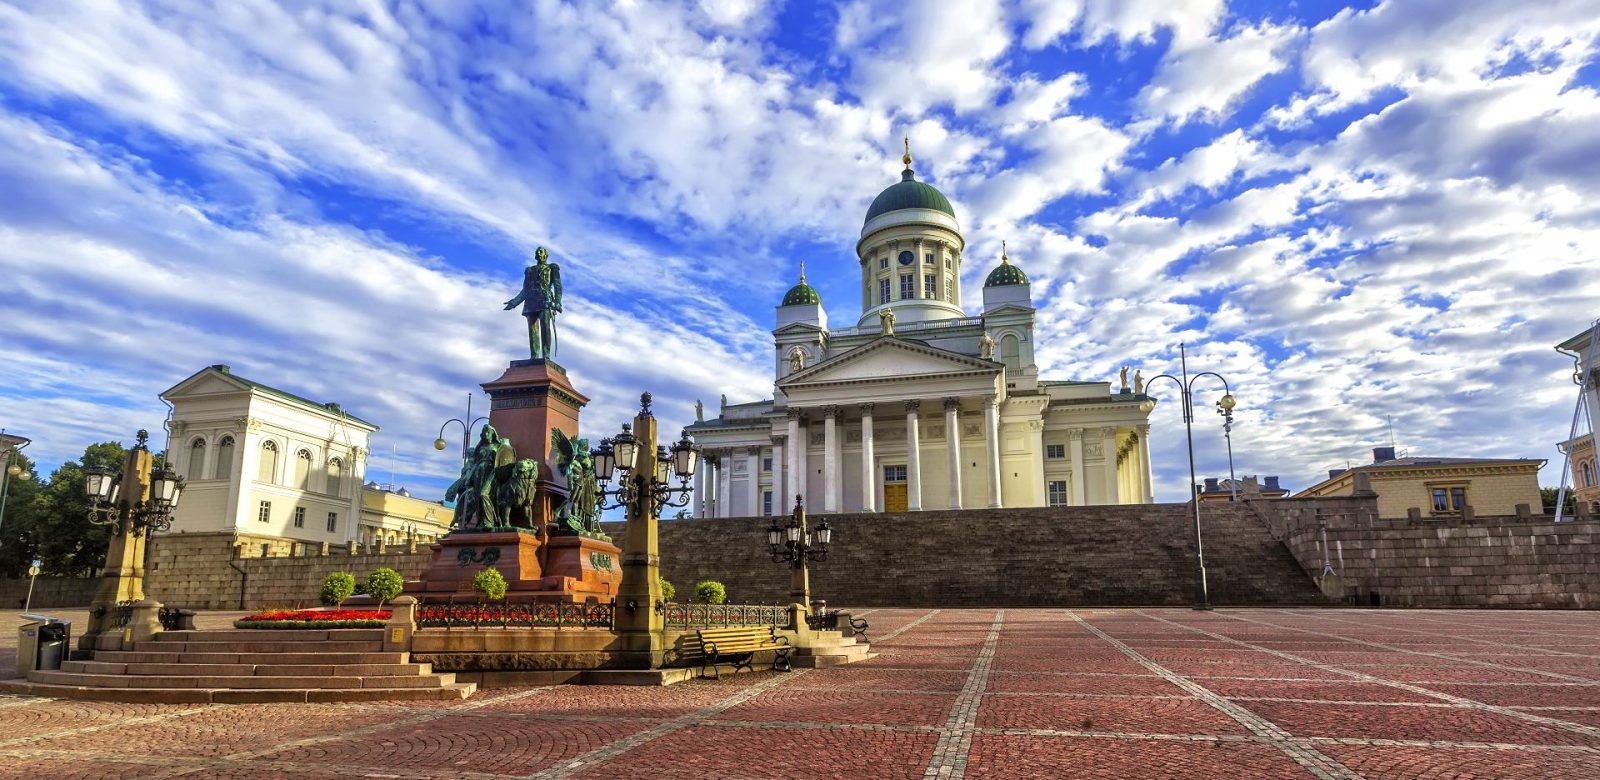 Стольный град... Кафедральный собор и памятник Александру Второму в Хельсинки